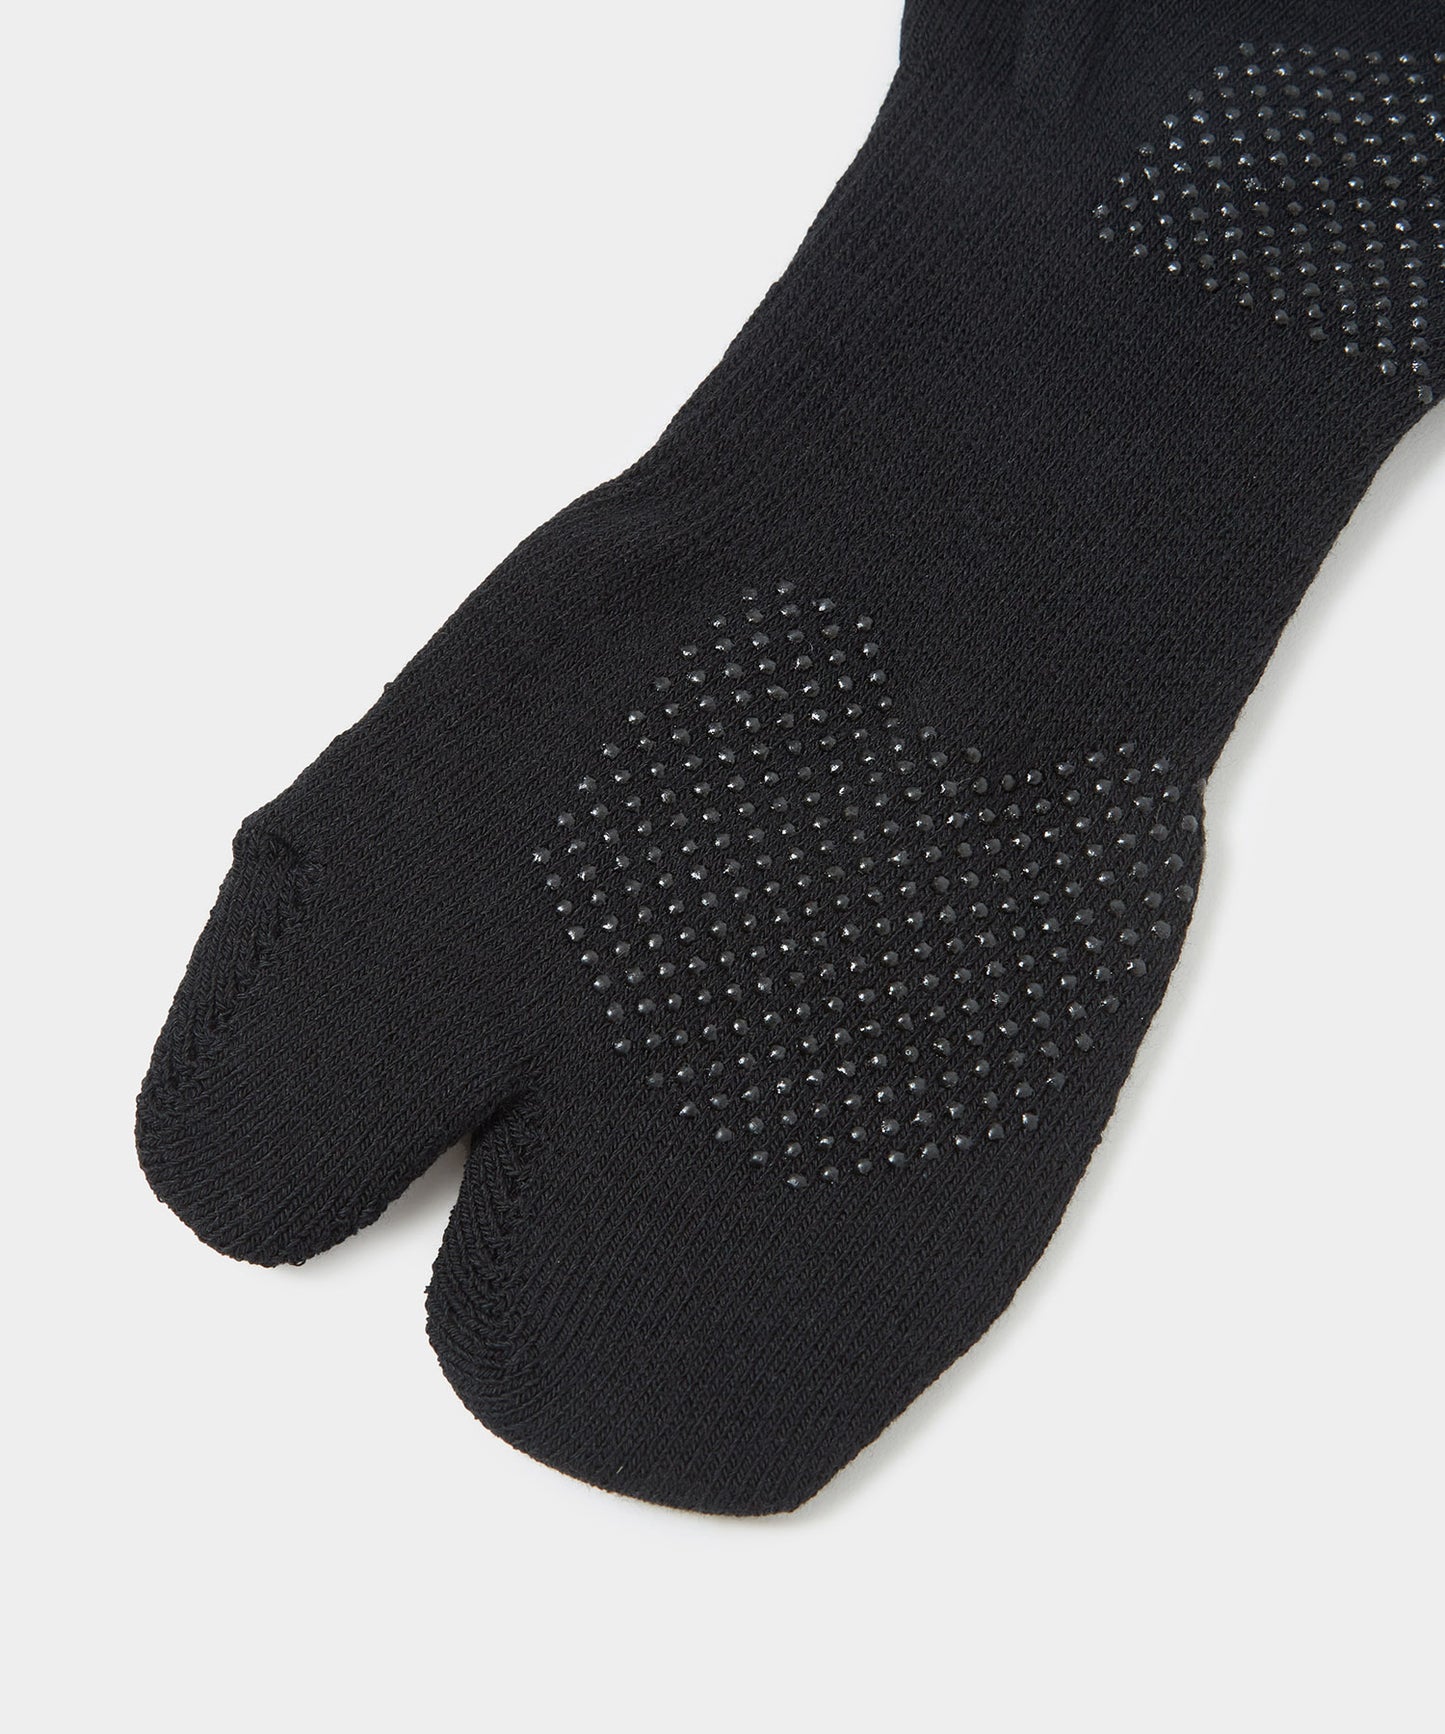 NEEDLES Thumb Ankle Socks - Cool Max BLACK